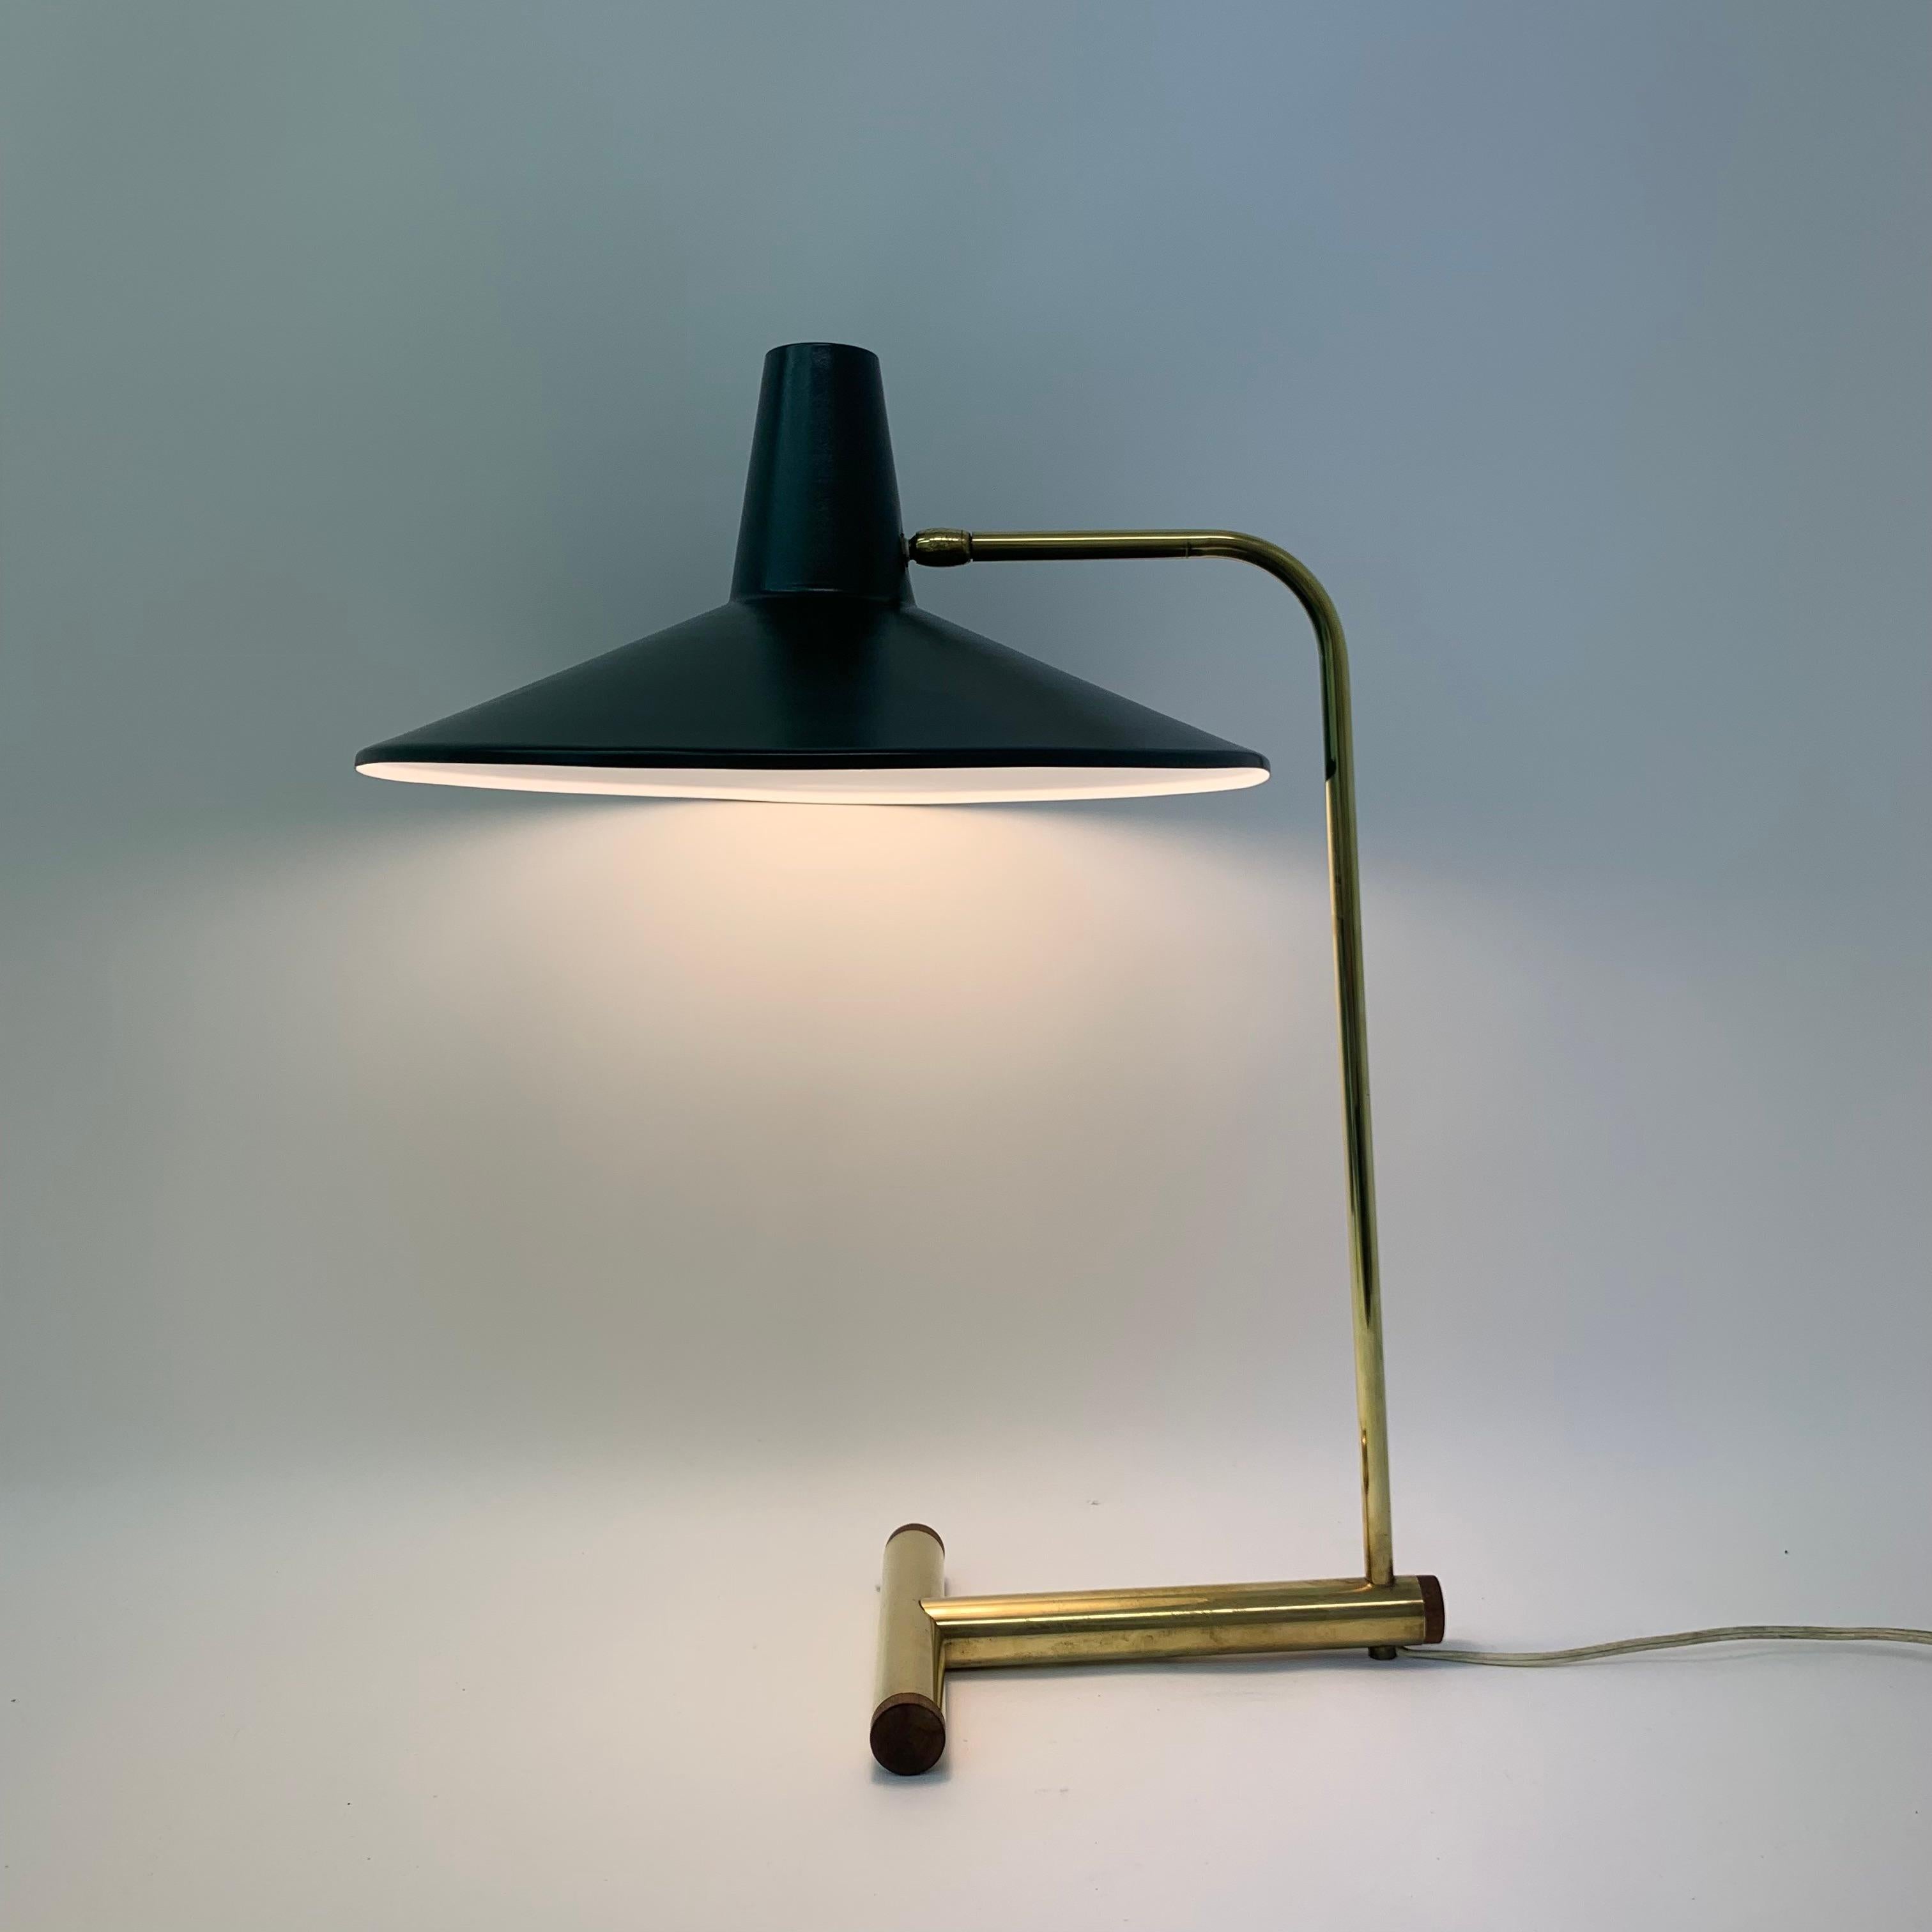 Belle lampe avec une belle utilisation de différents matériaux.